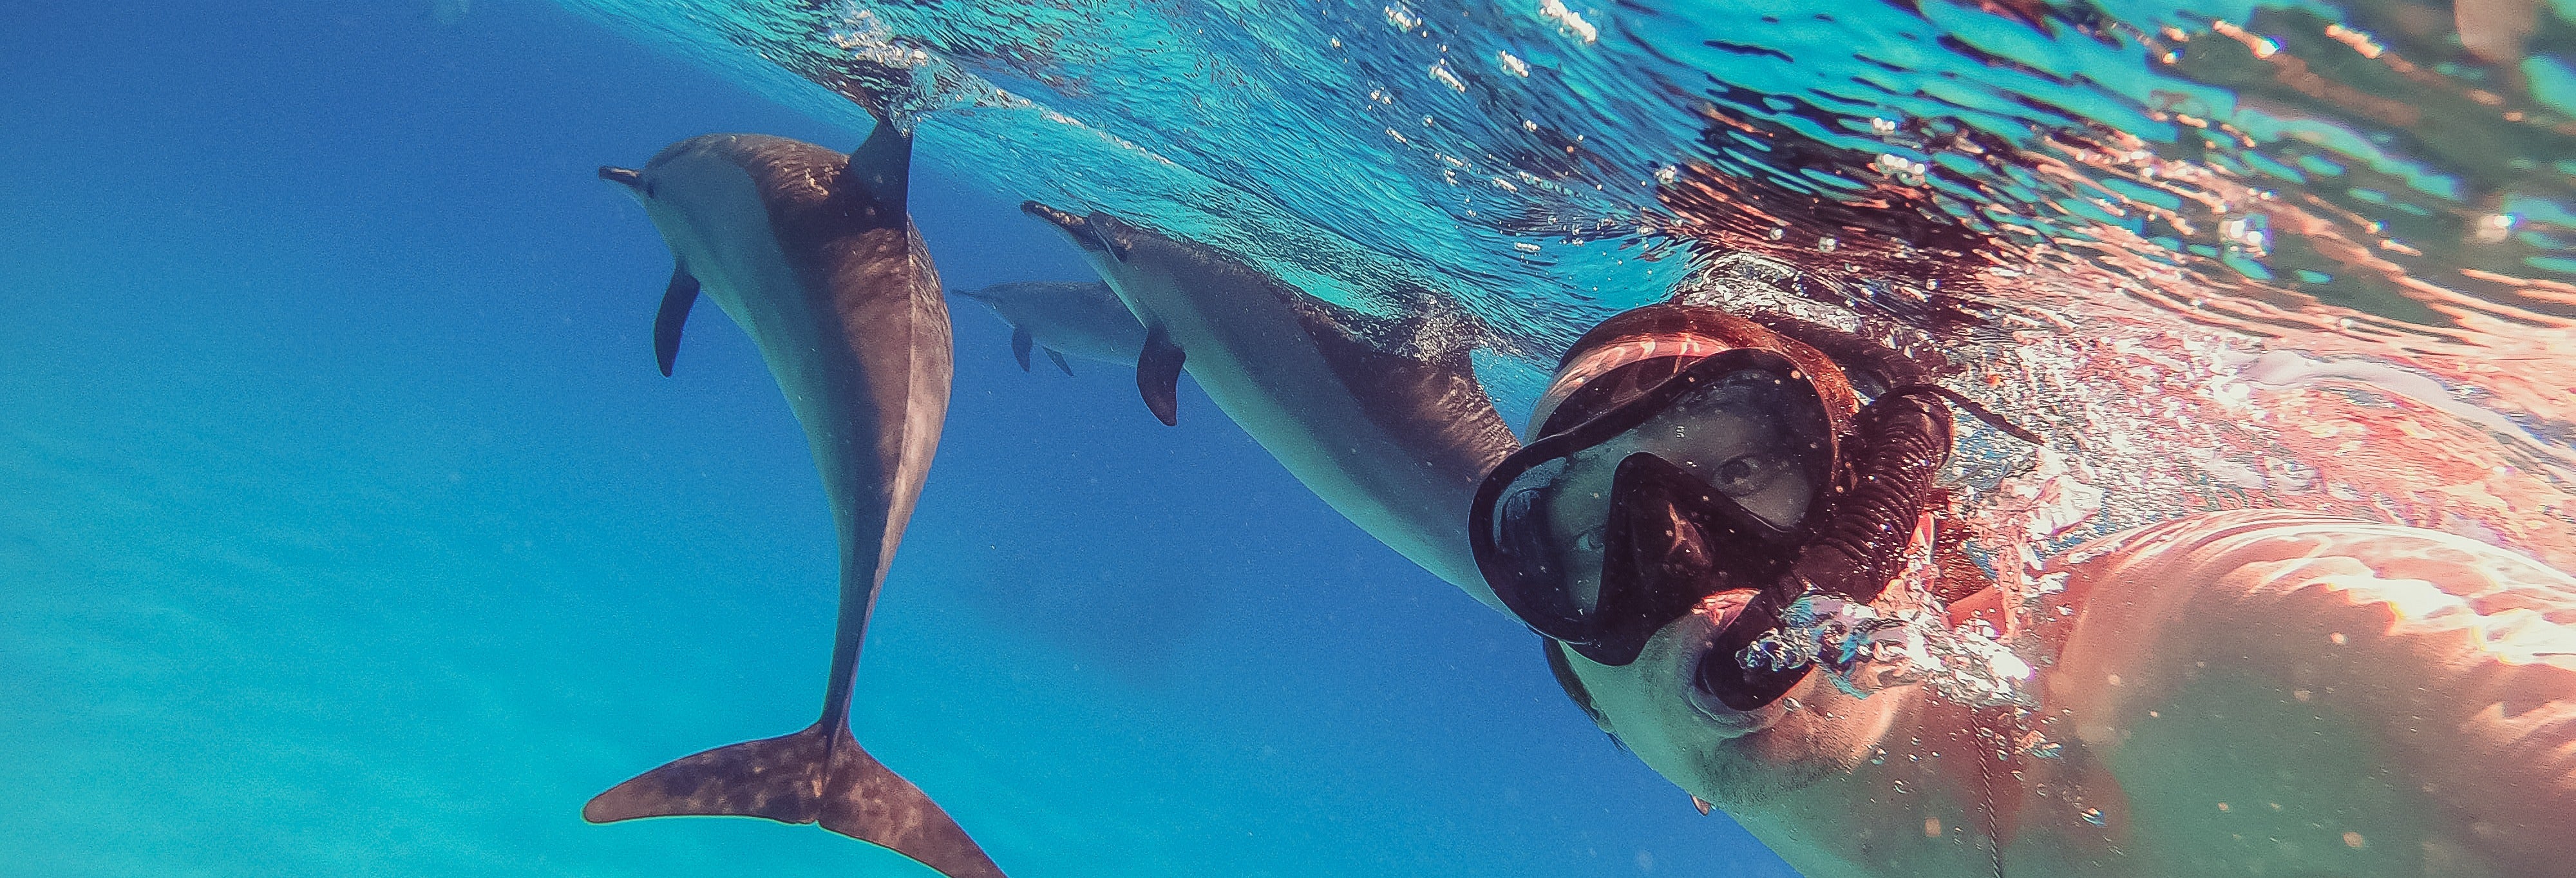 Nadar com golfinhos na Ilha da Madeira